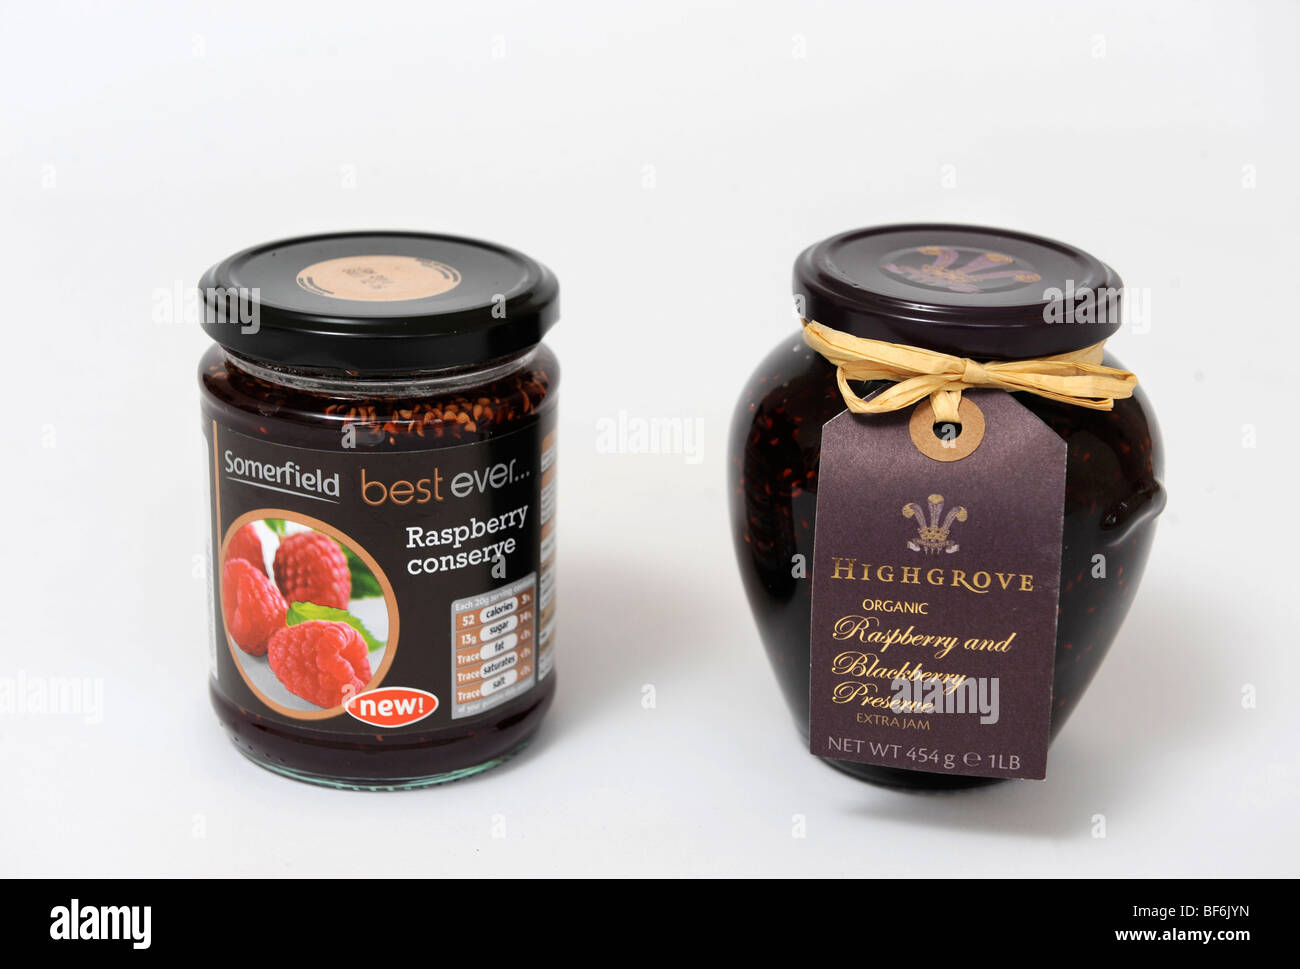 Ejemplos similares de alternativa productos mermelada de fruta de frambuesa y conservar desde el supermercado Somerfield (izquierda) y preservar de frambuesa Foto de stock